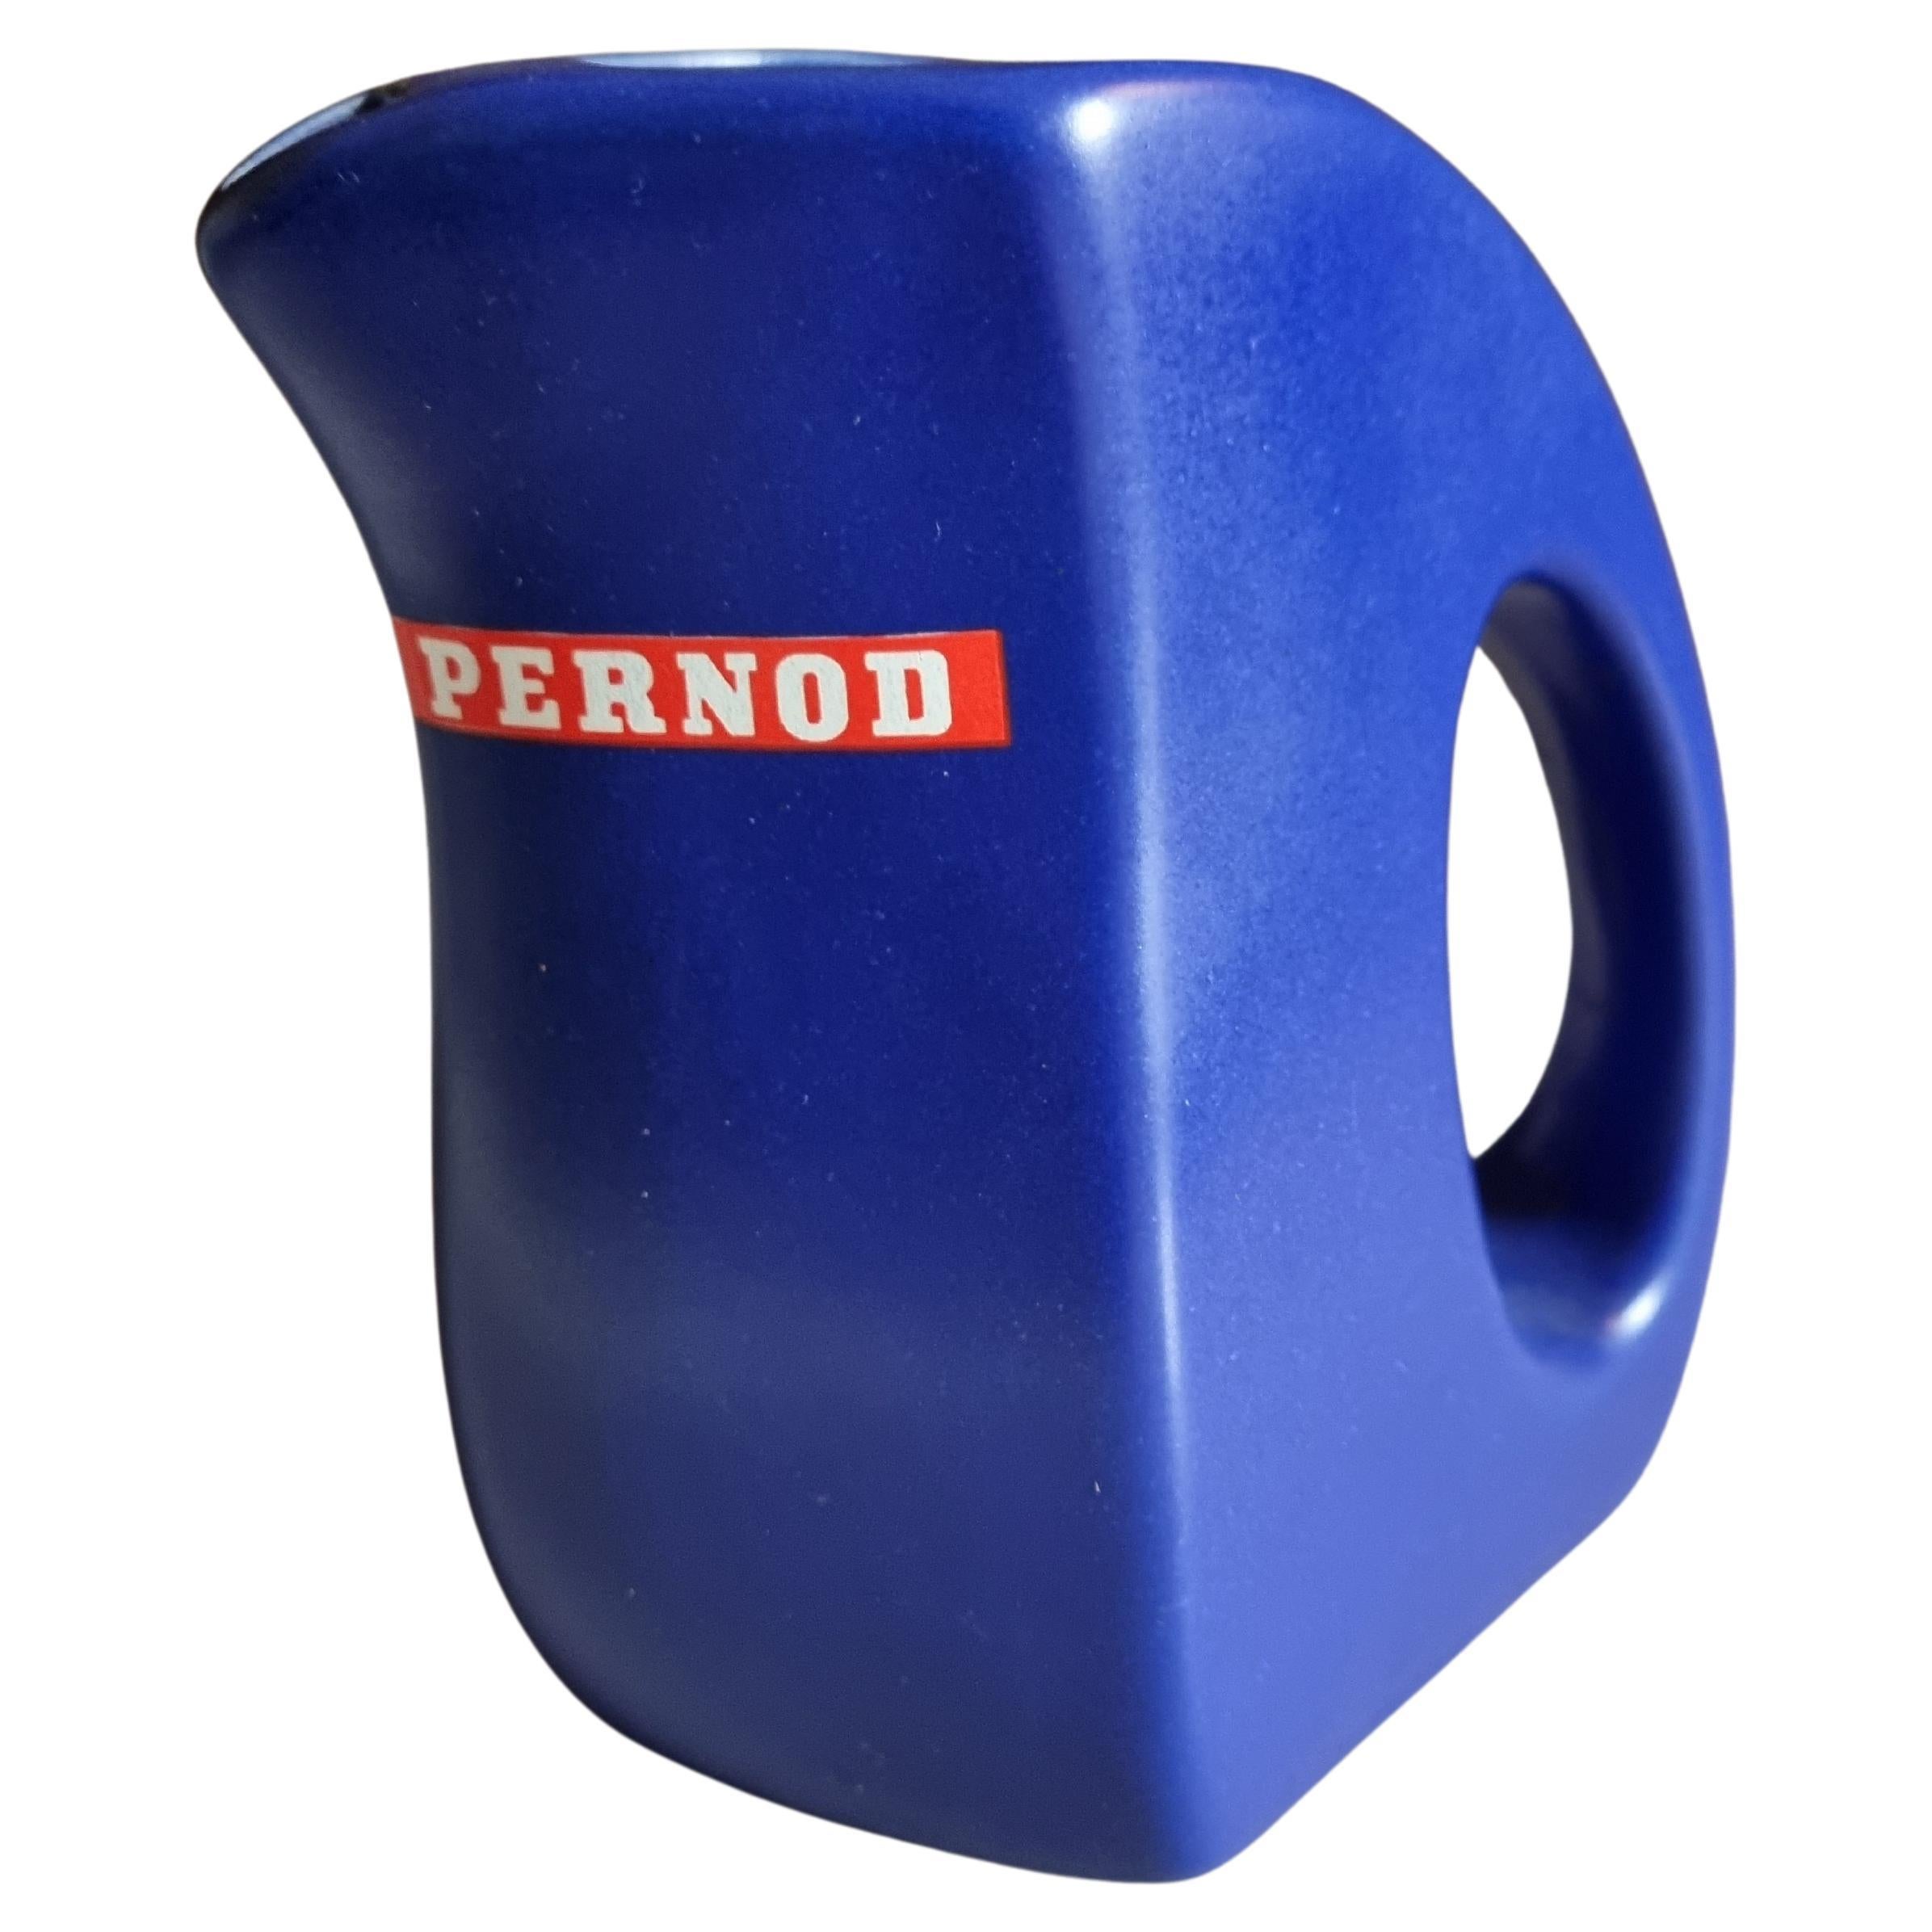 Pernod Wasserkrug in blau France, années 80 en vente